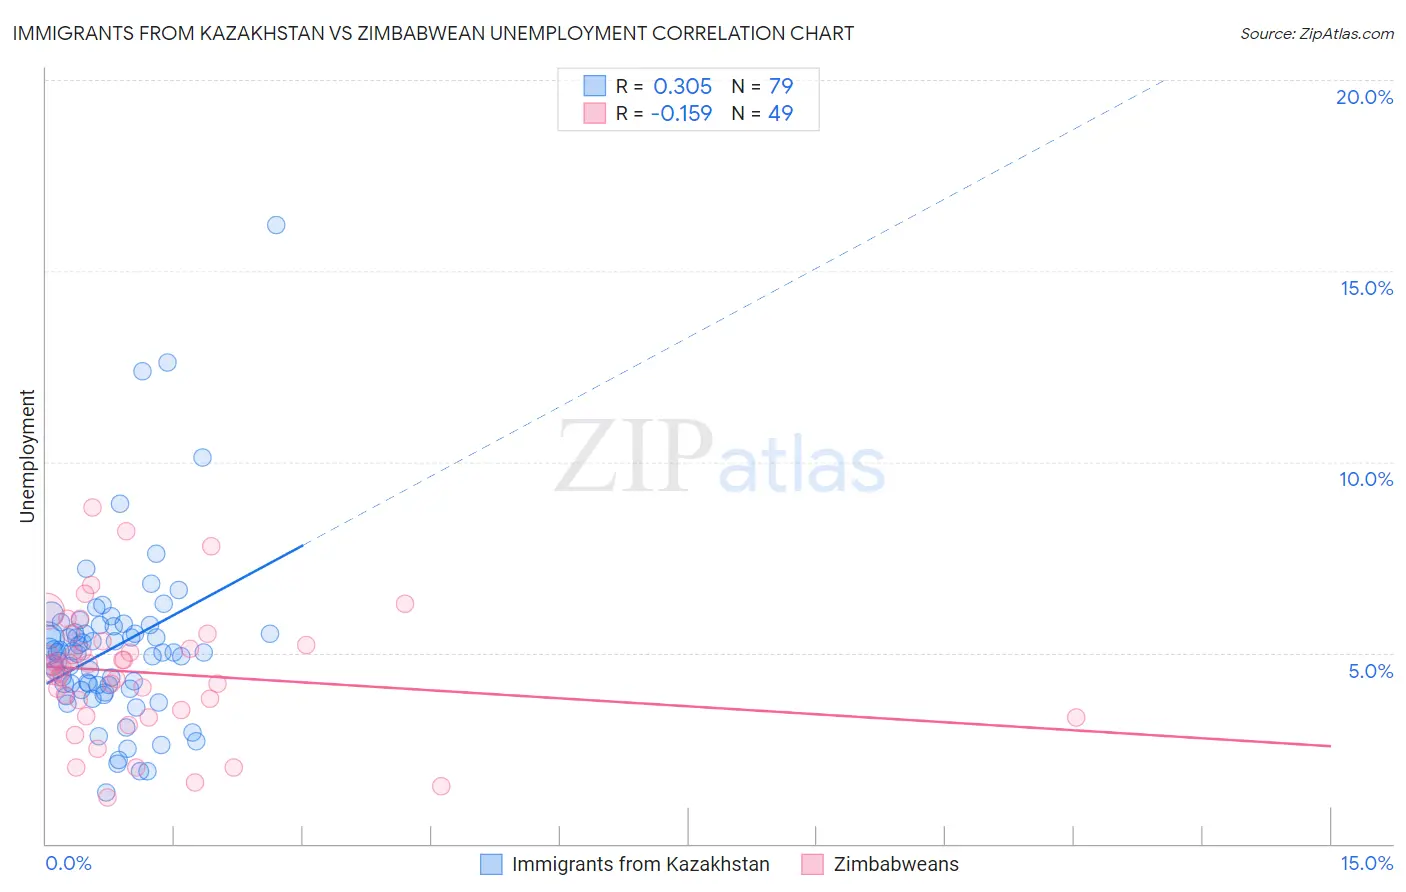 Immigrants from Kazakhstan vs Zimbabwean Unemployment